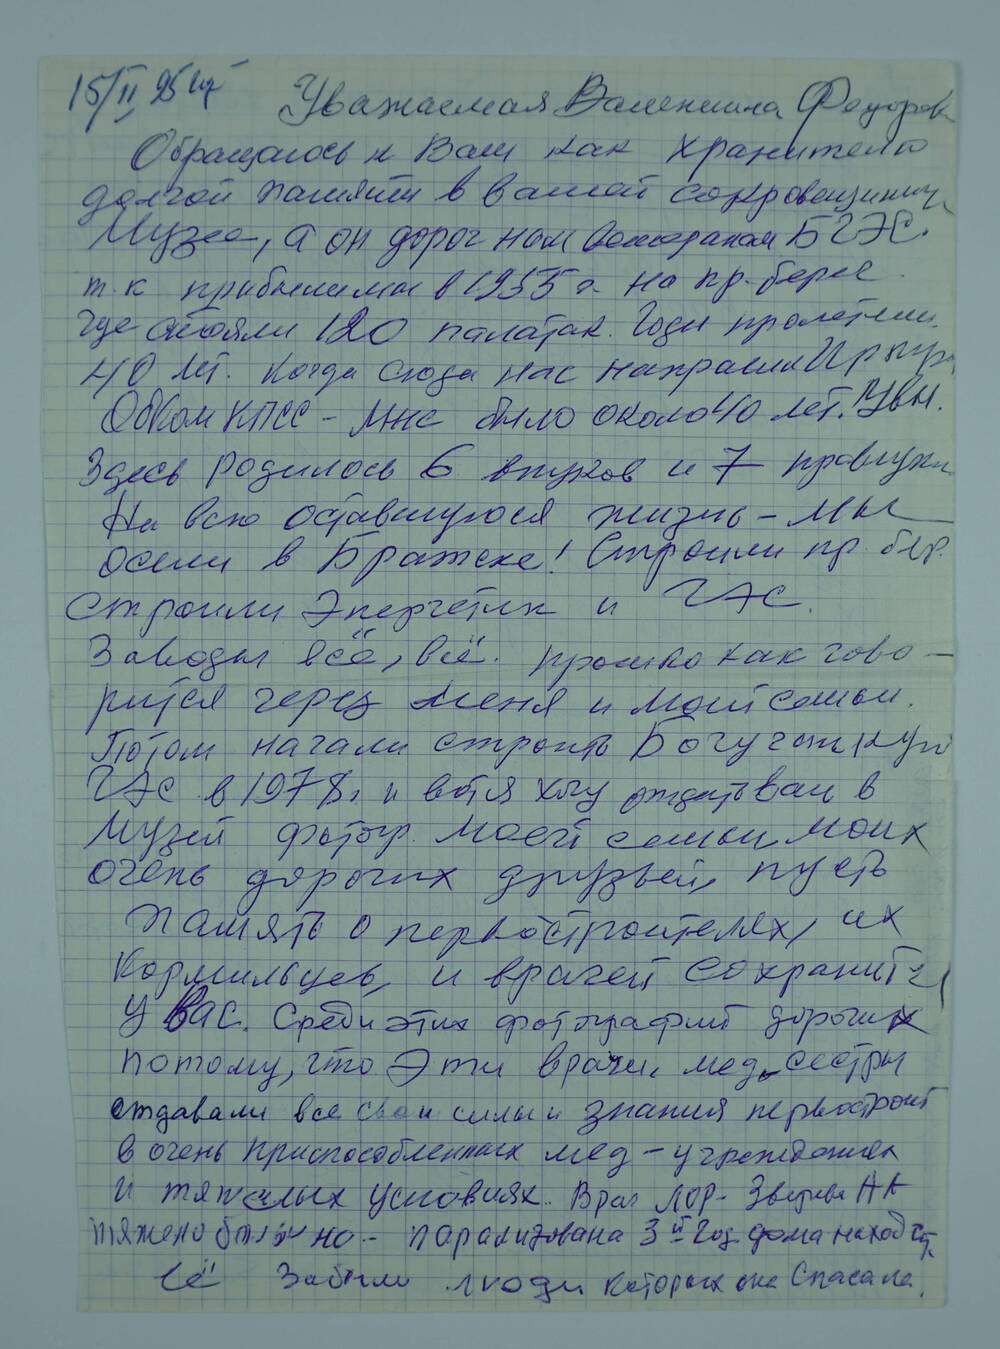 Письмо Елены Павловны Дорошко в музей Братскгэсстроя и города Братска от 15.02.1995 г.